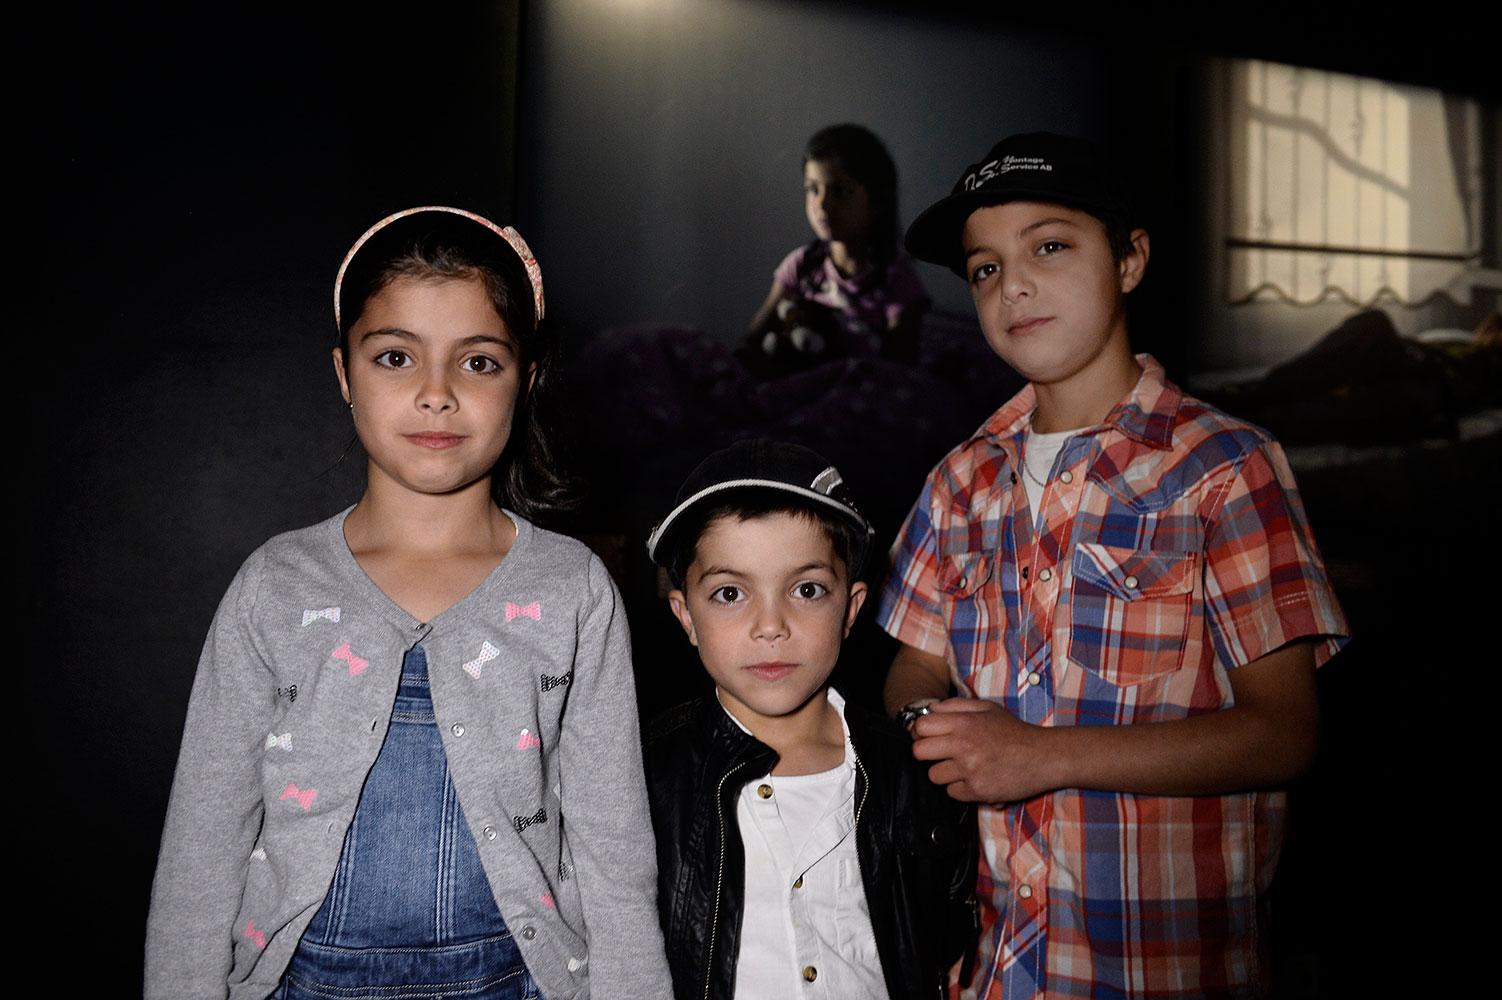 Fatima, 9, tillsammans med bröderna Hamza, 6, och Abdullatif, 11. Magnus Wennman fångade Fatima på bild när hon satt i sin säng och berättade om sina mardrömmar.